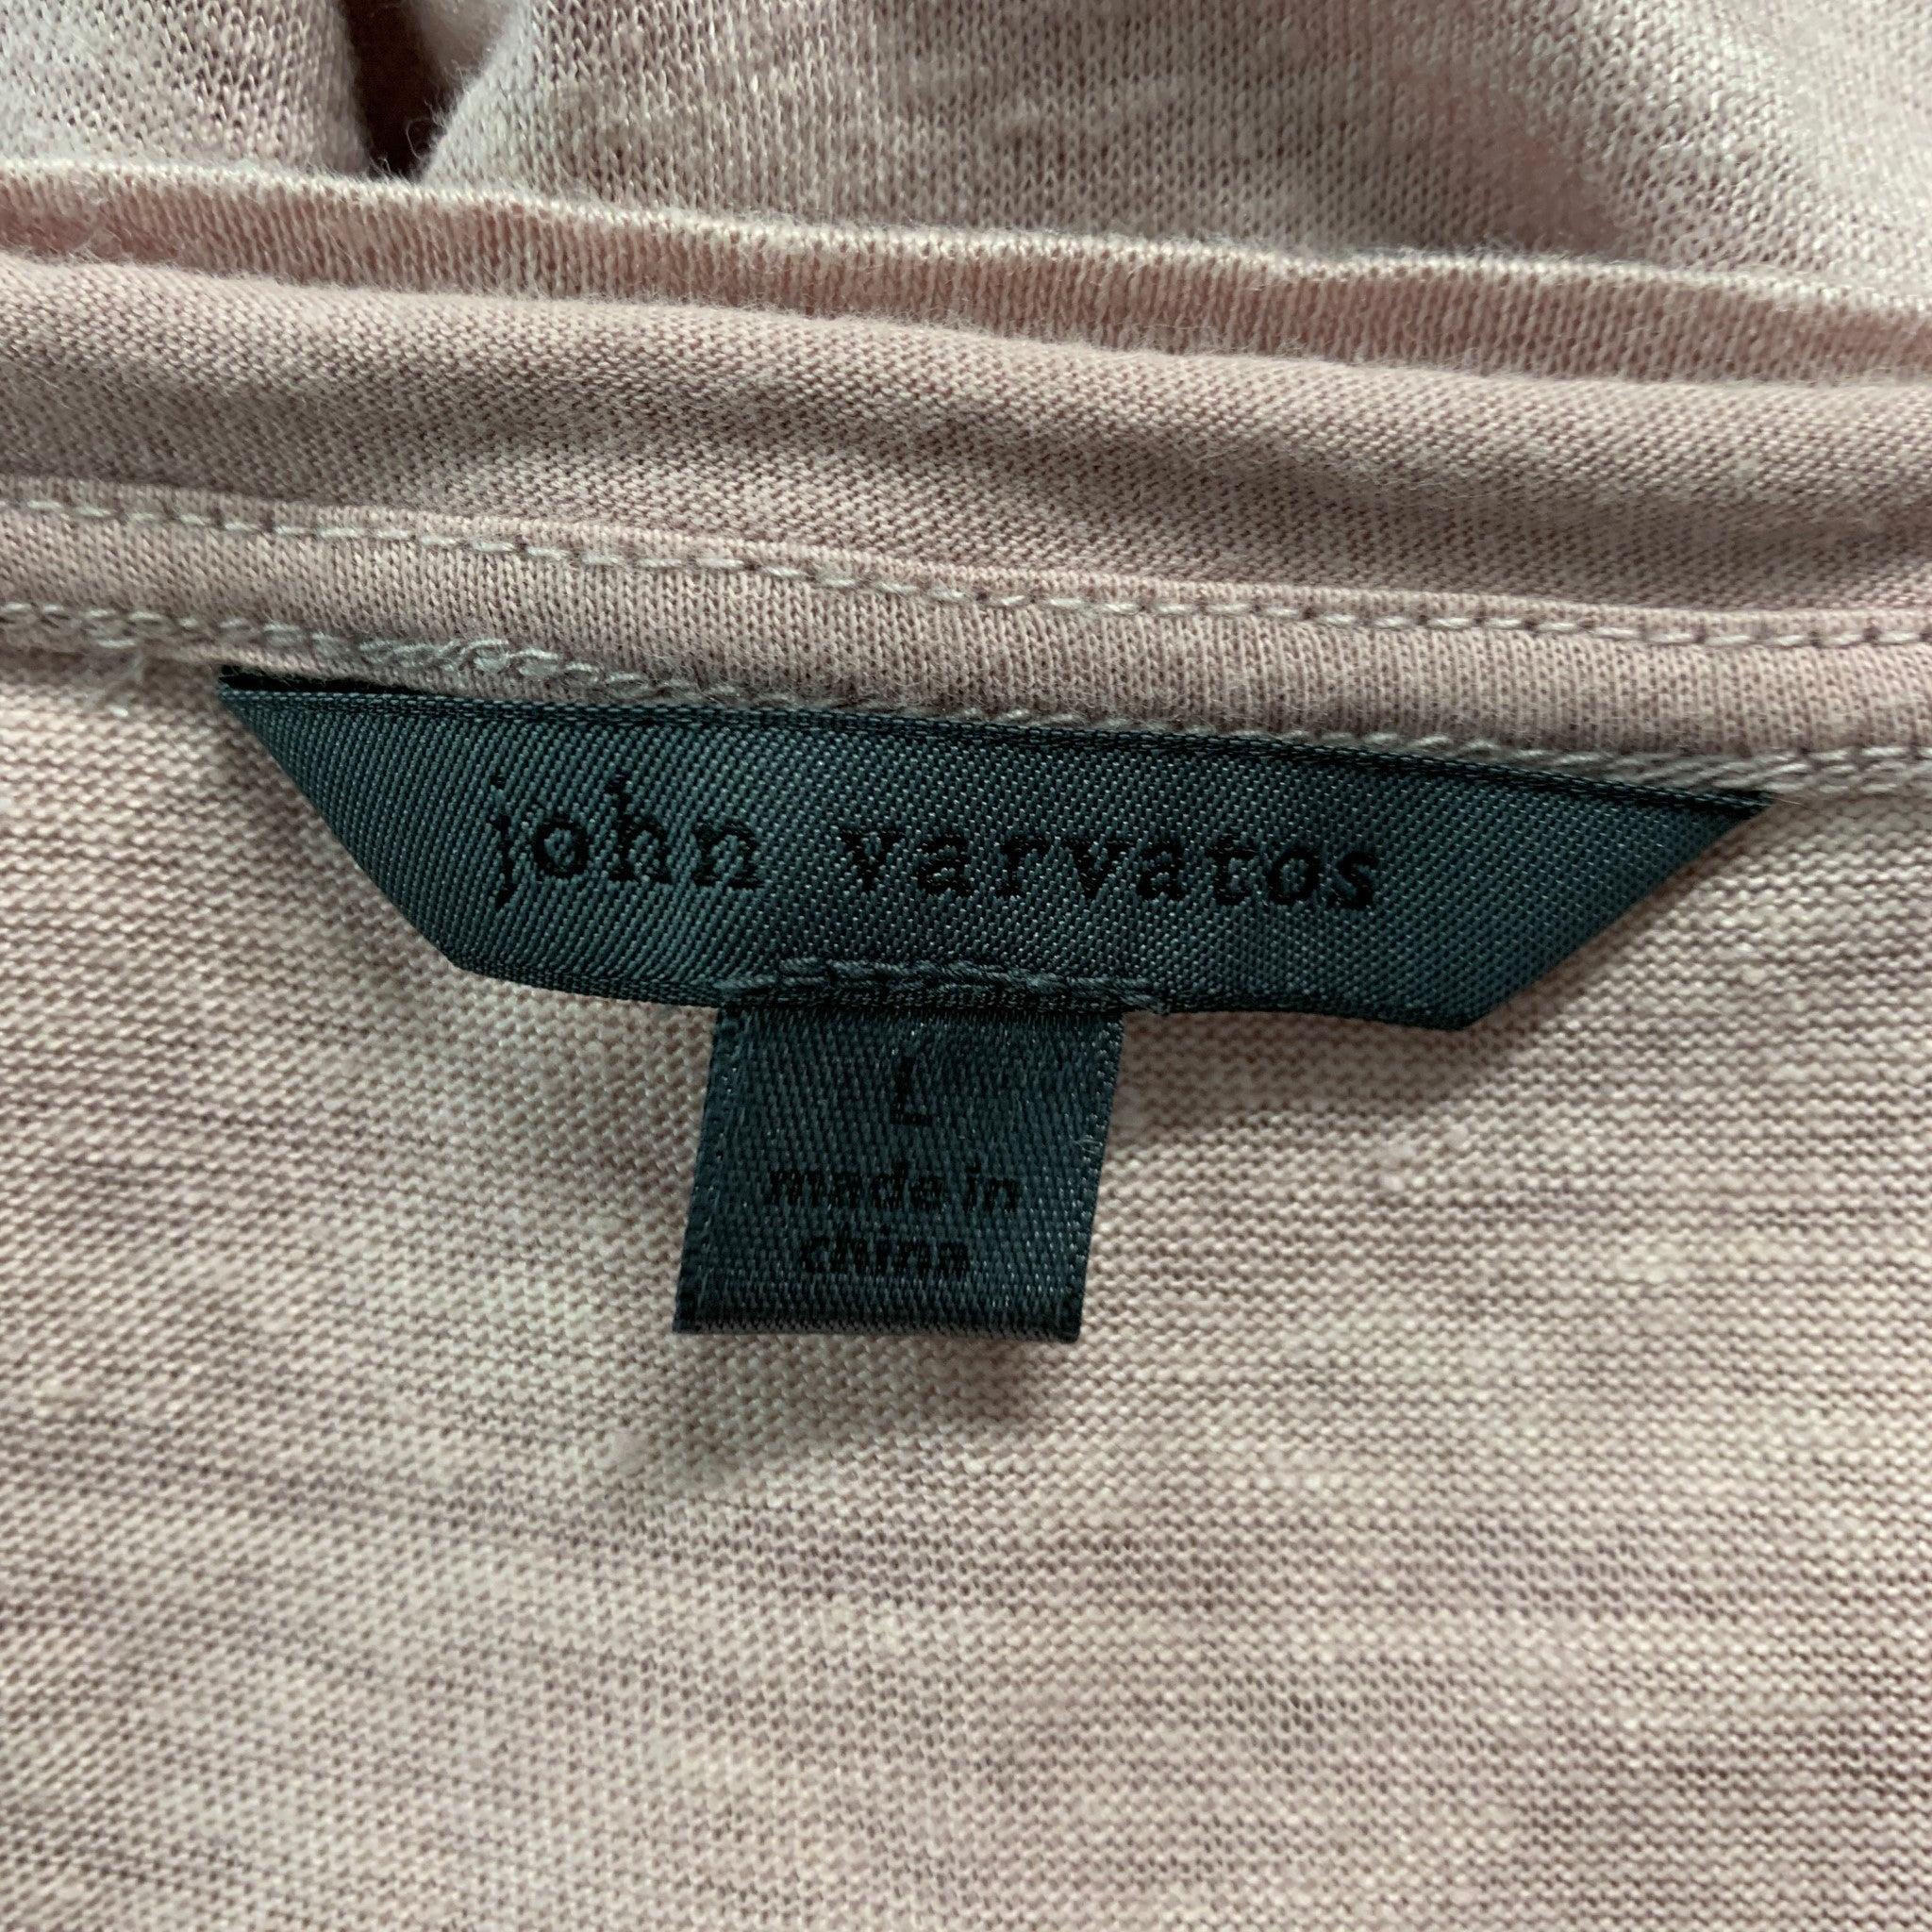 Men's JOHN VARVATOS Size L Pink Heather Linen V-Neck T-shirt